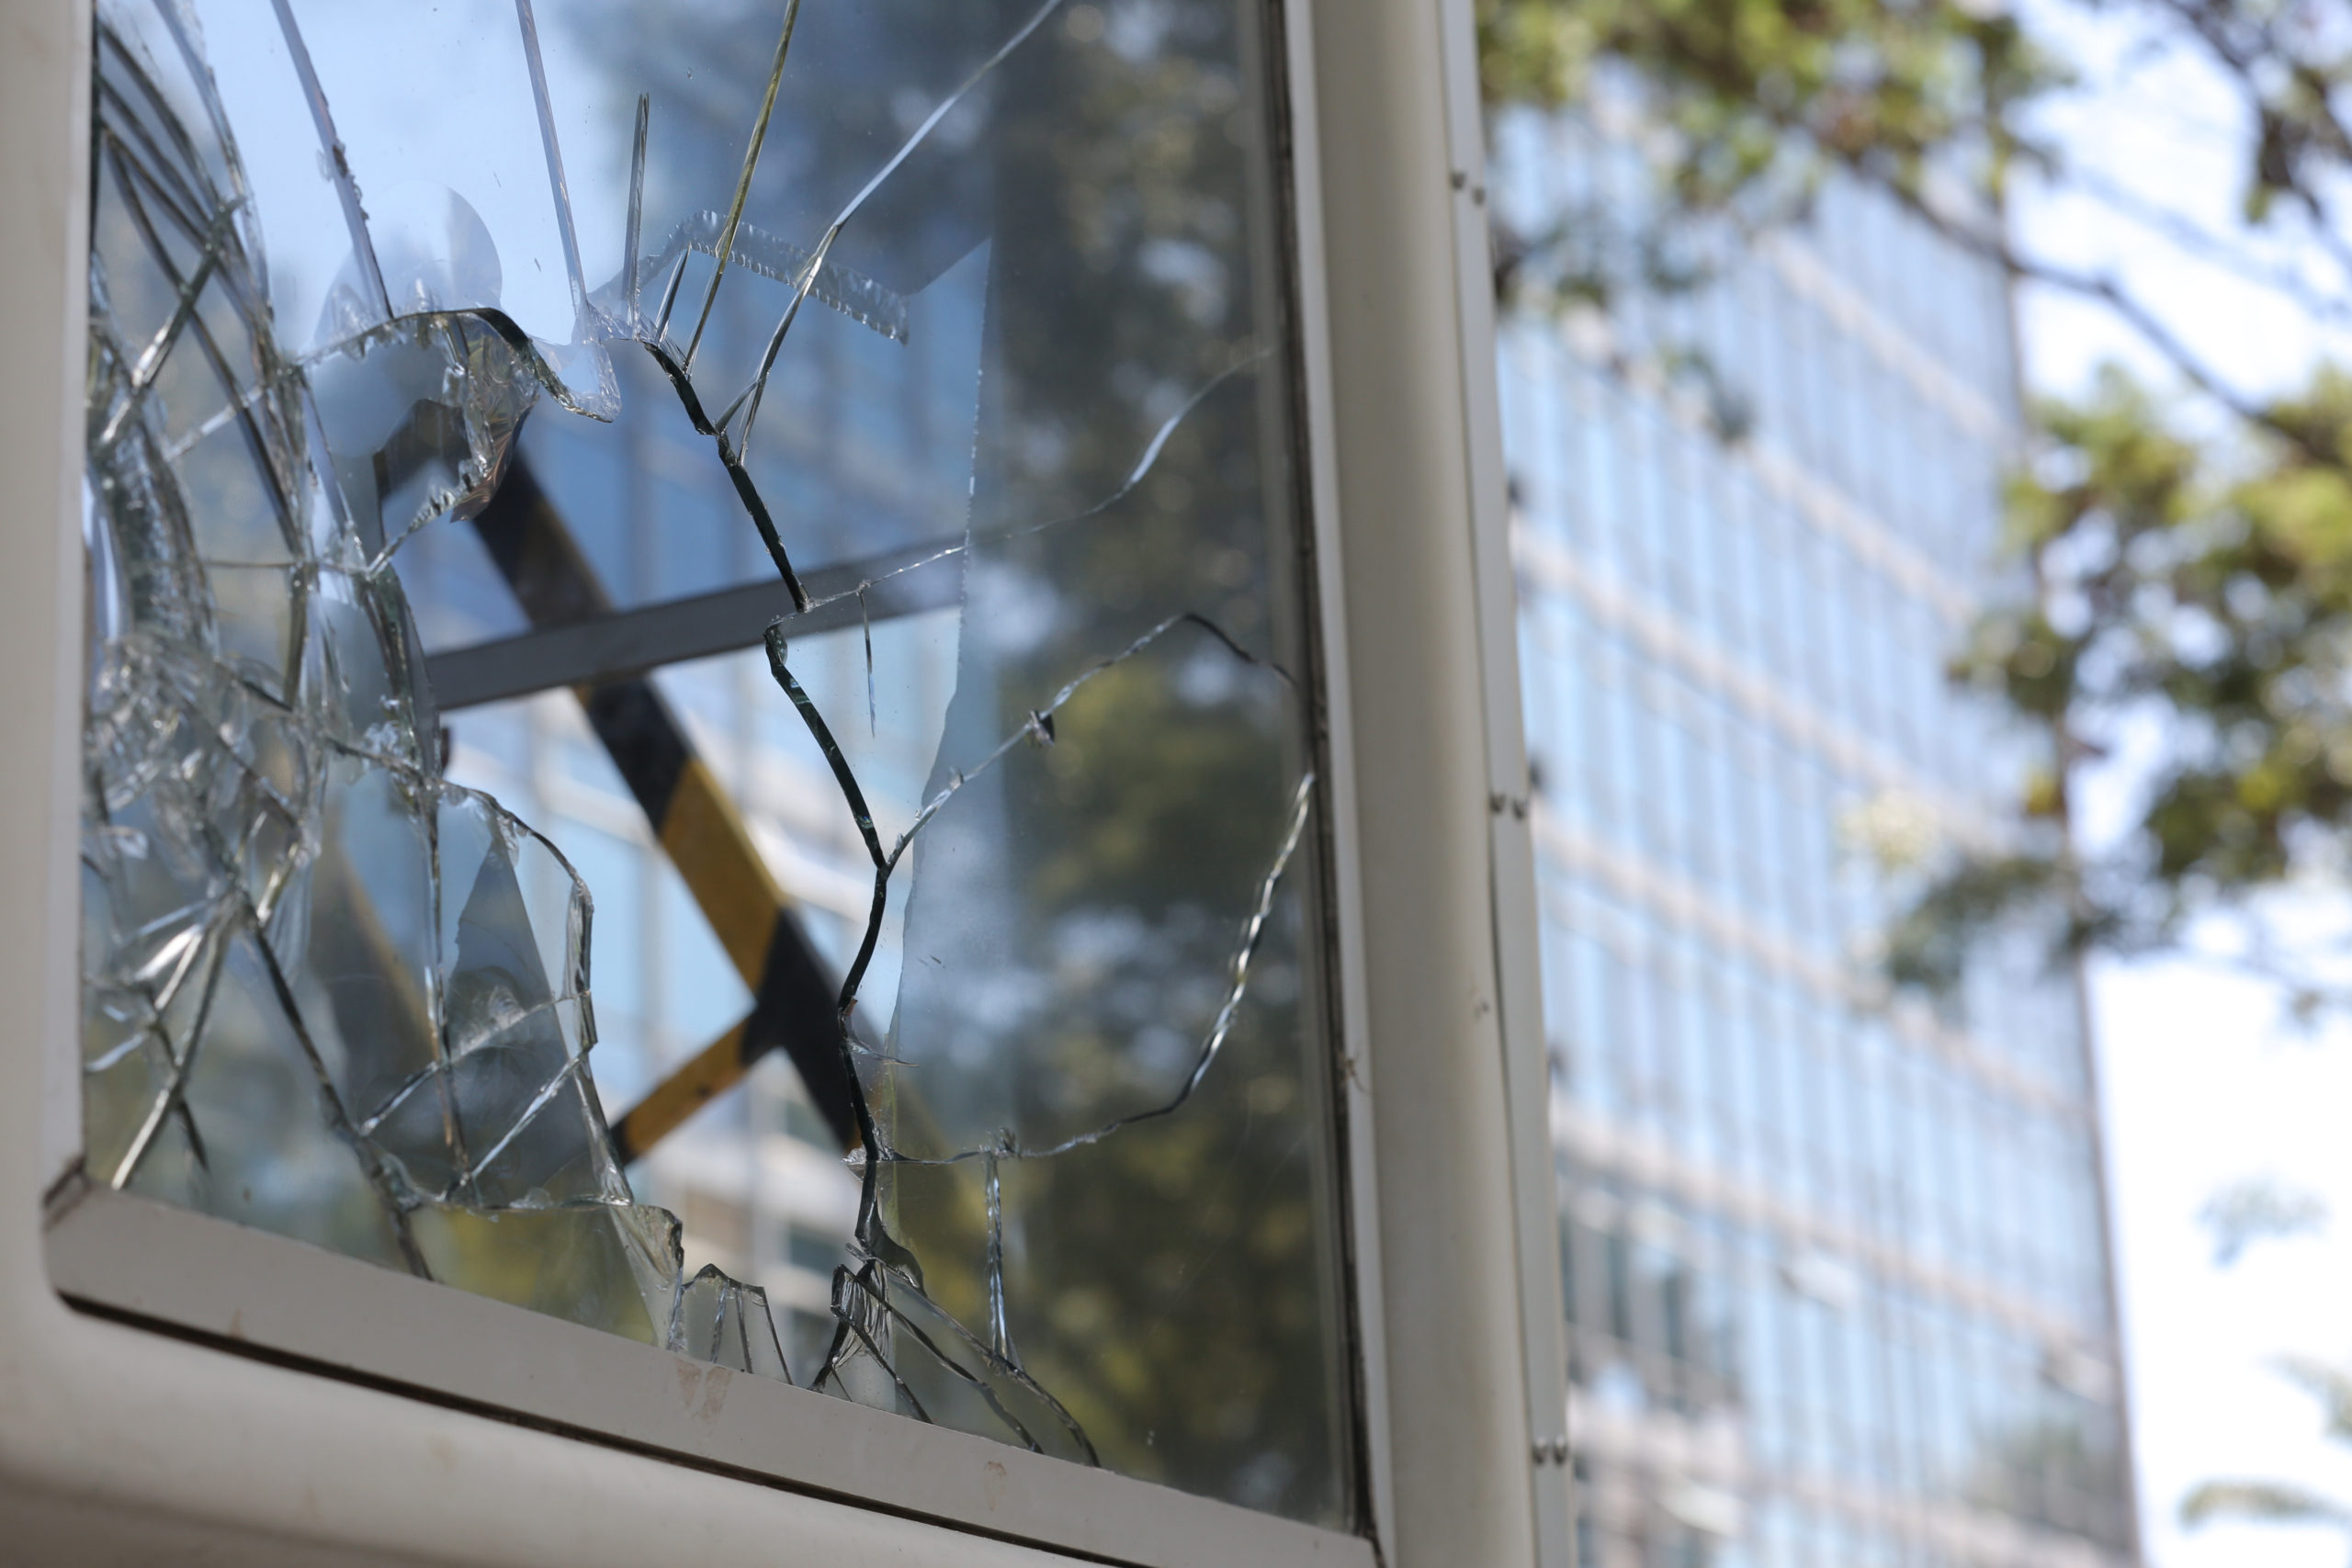 Atto vandalico in scuola dell’infanzia, danneggiati infissi e finestre: nessun furto, “mero interesse di fare danno”